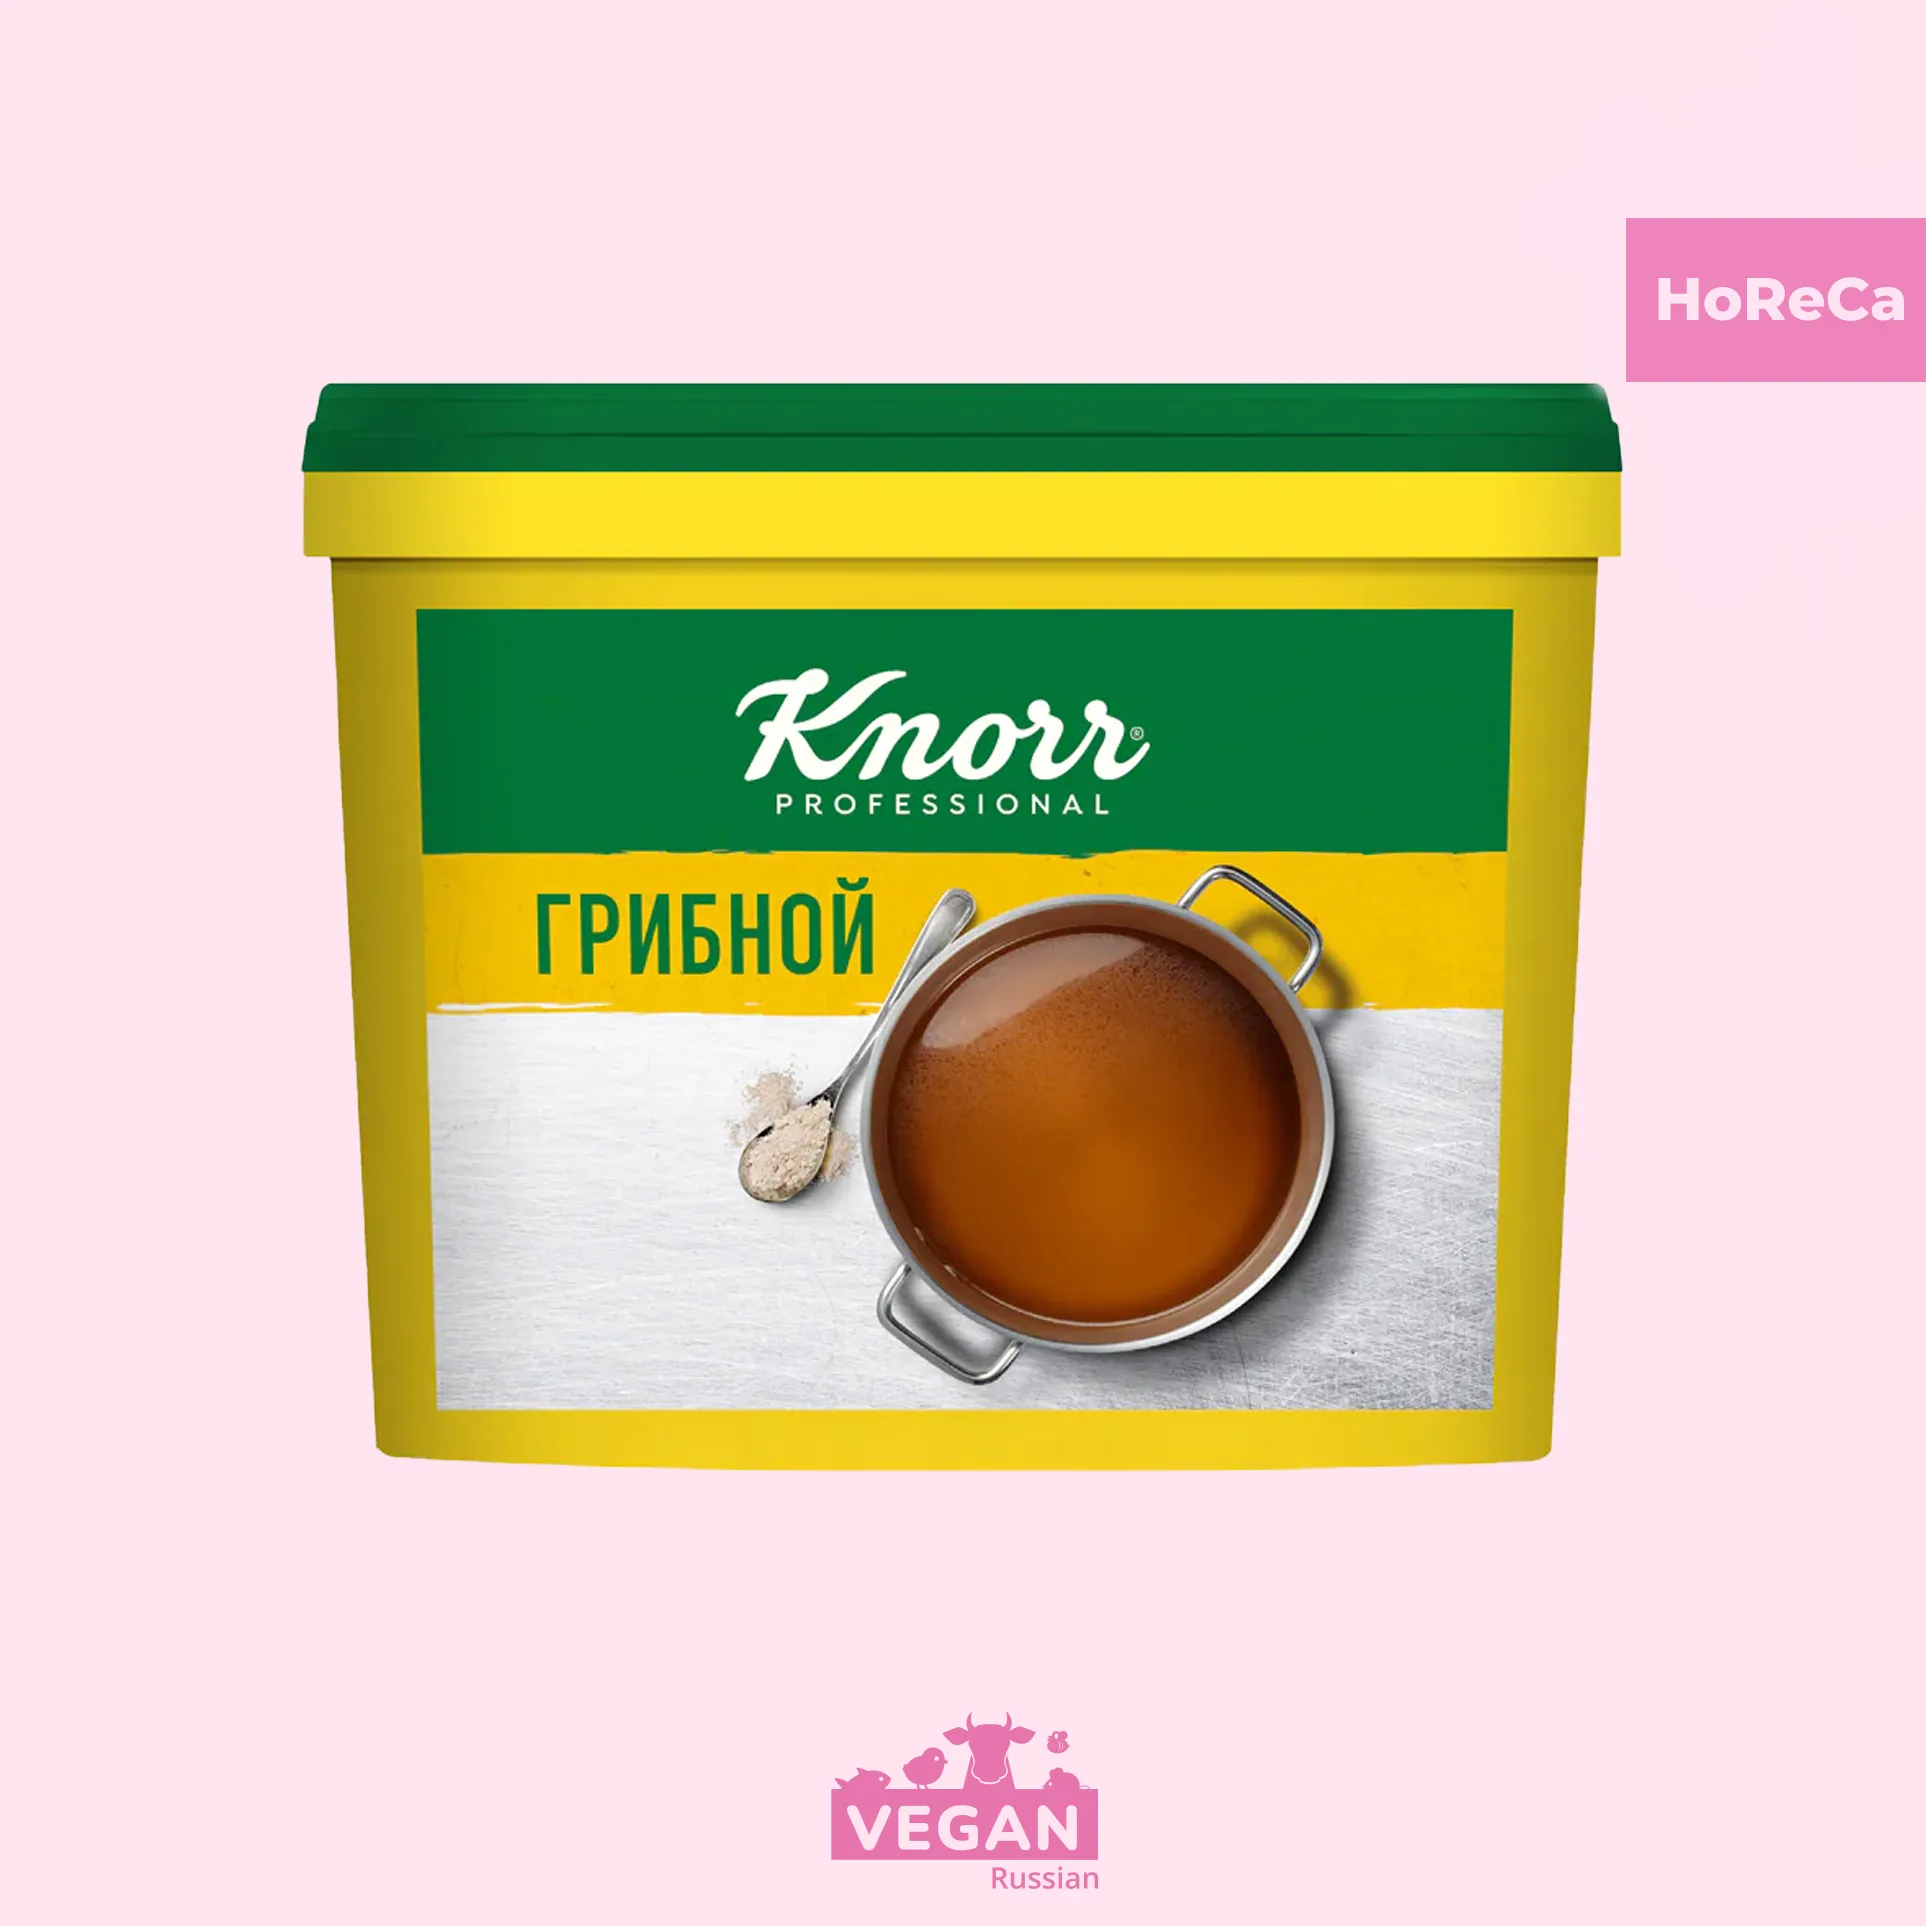 Knorr Professional Бульон Грибной Сухая смесь 2 кг